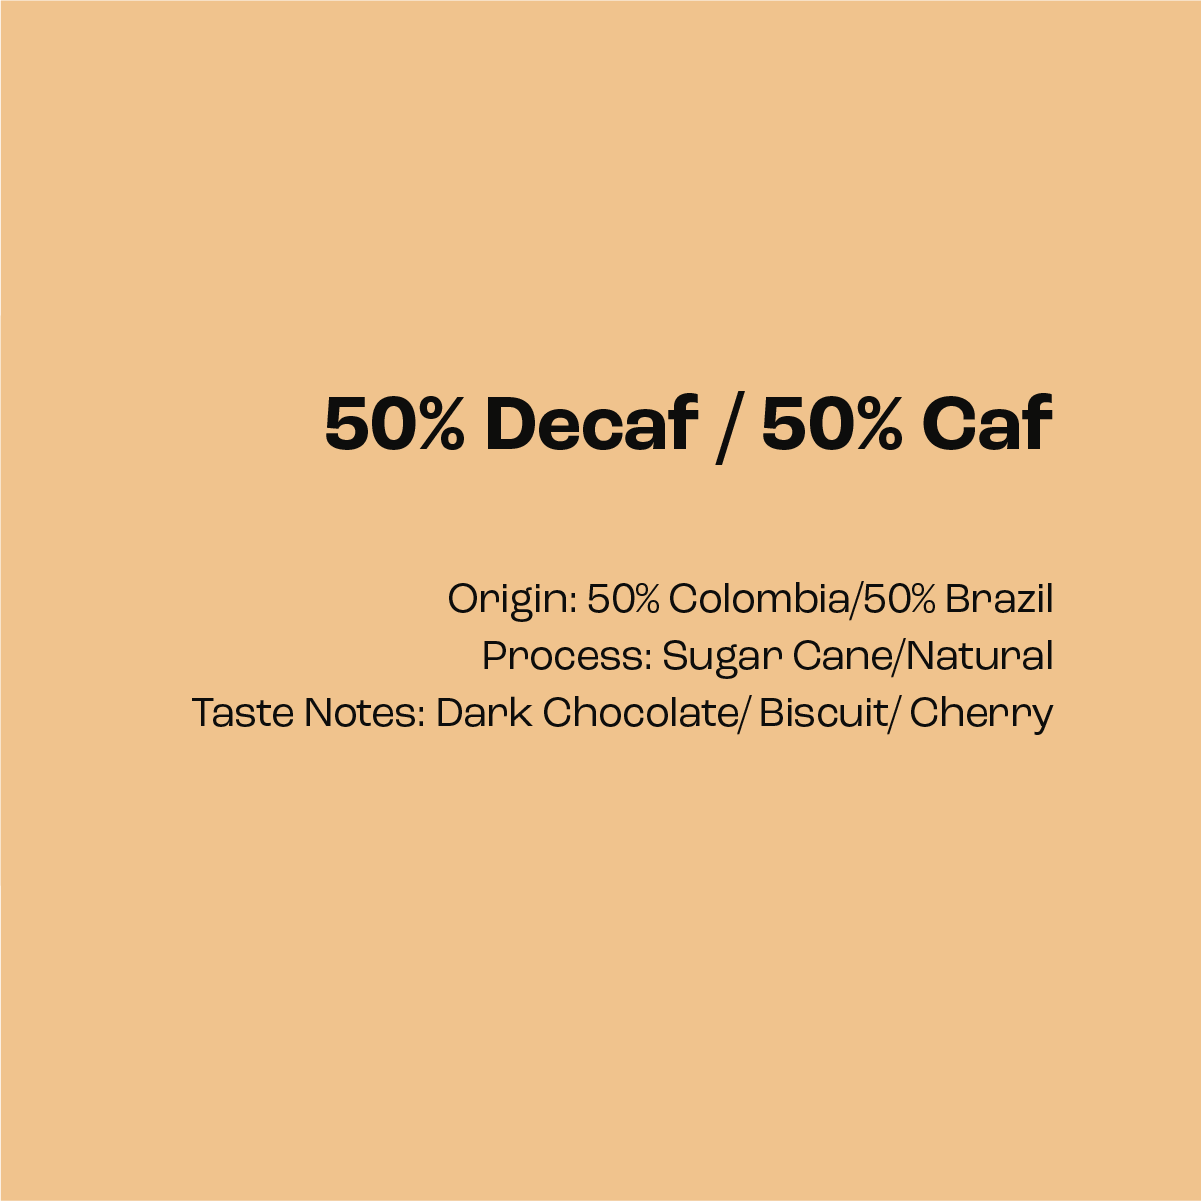 50% Decaf / 50% Caf